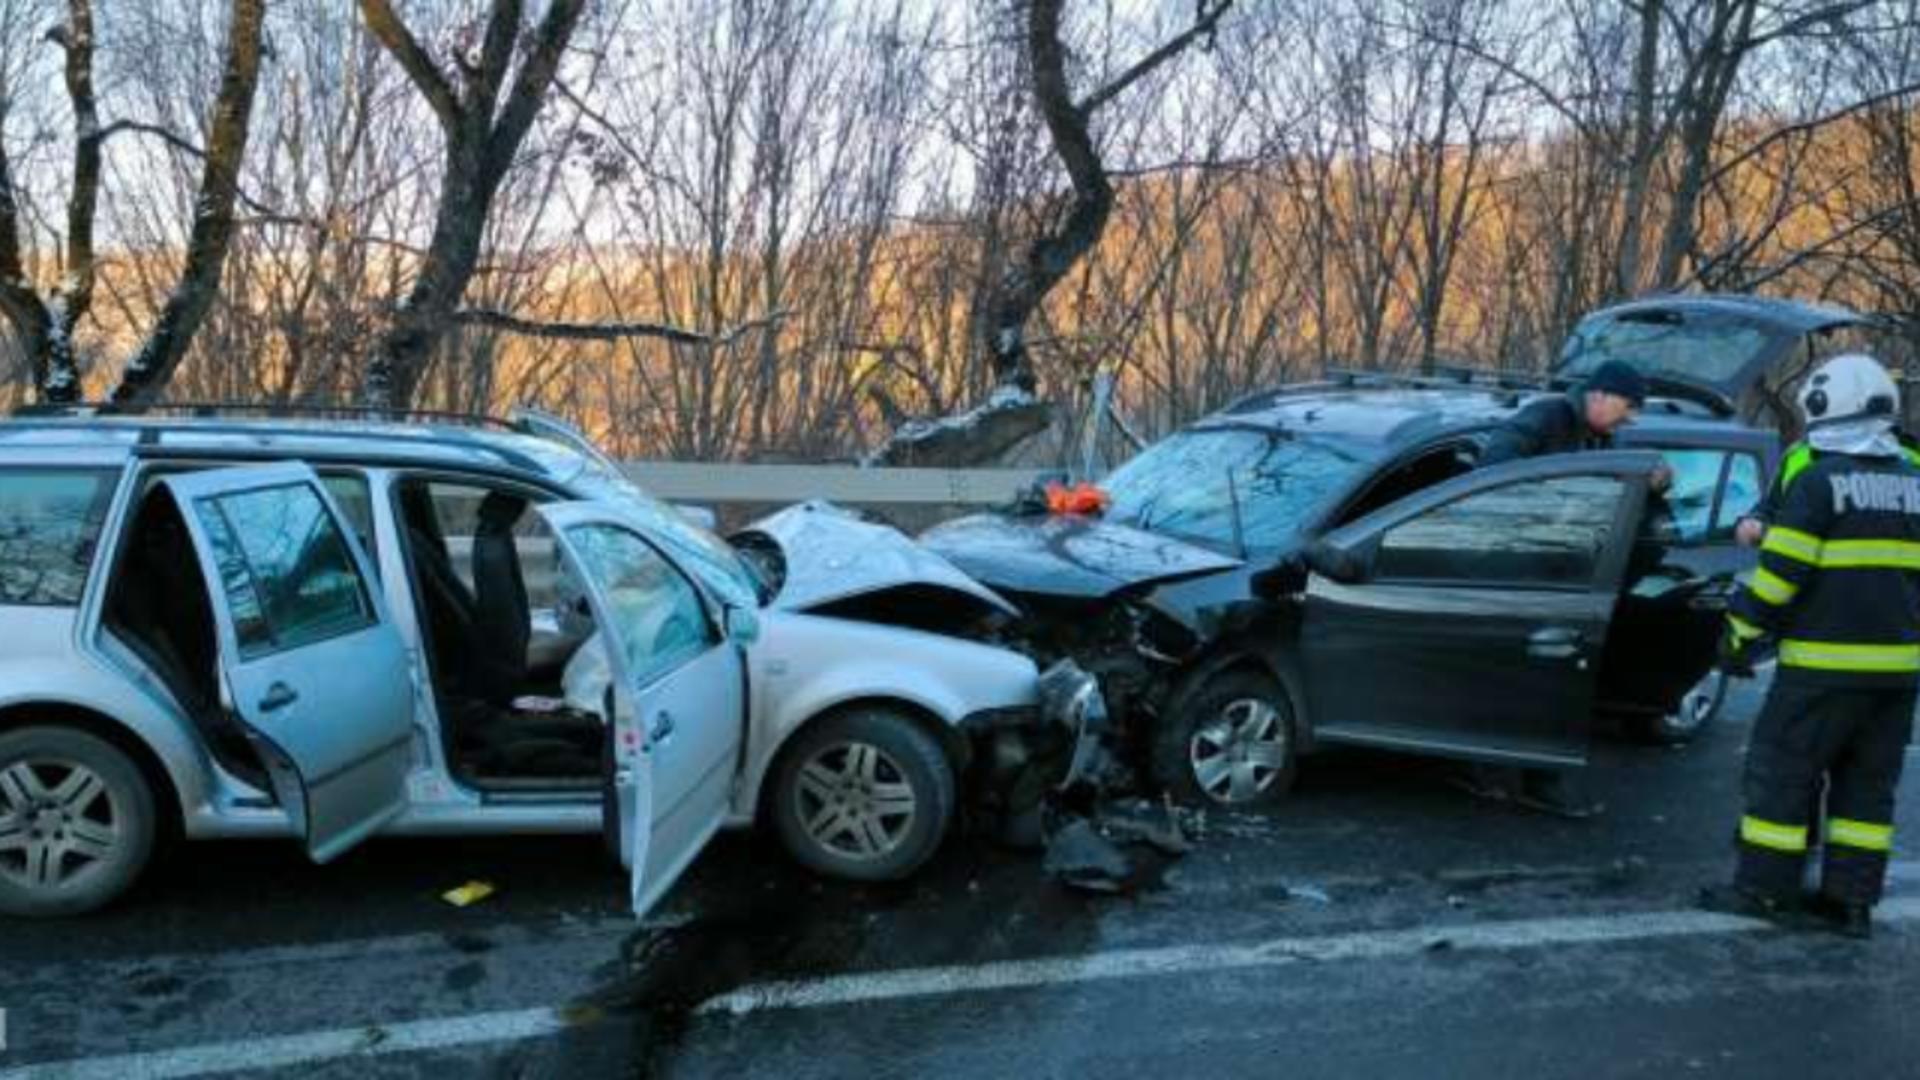 Șase răniți într-un accident rutier grav în Slimnic, Sibiu. Foto: Agerpres